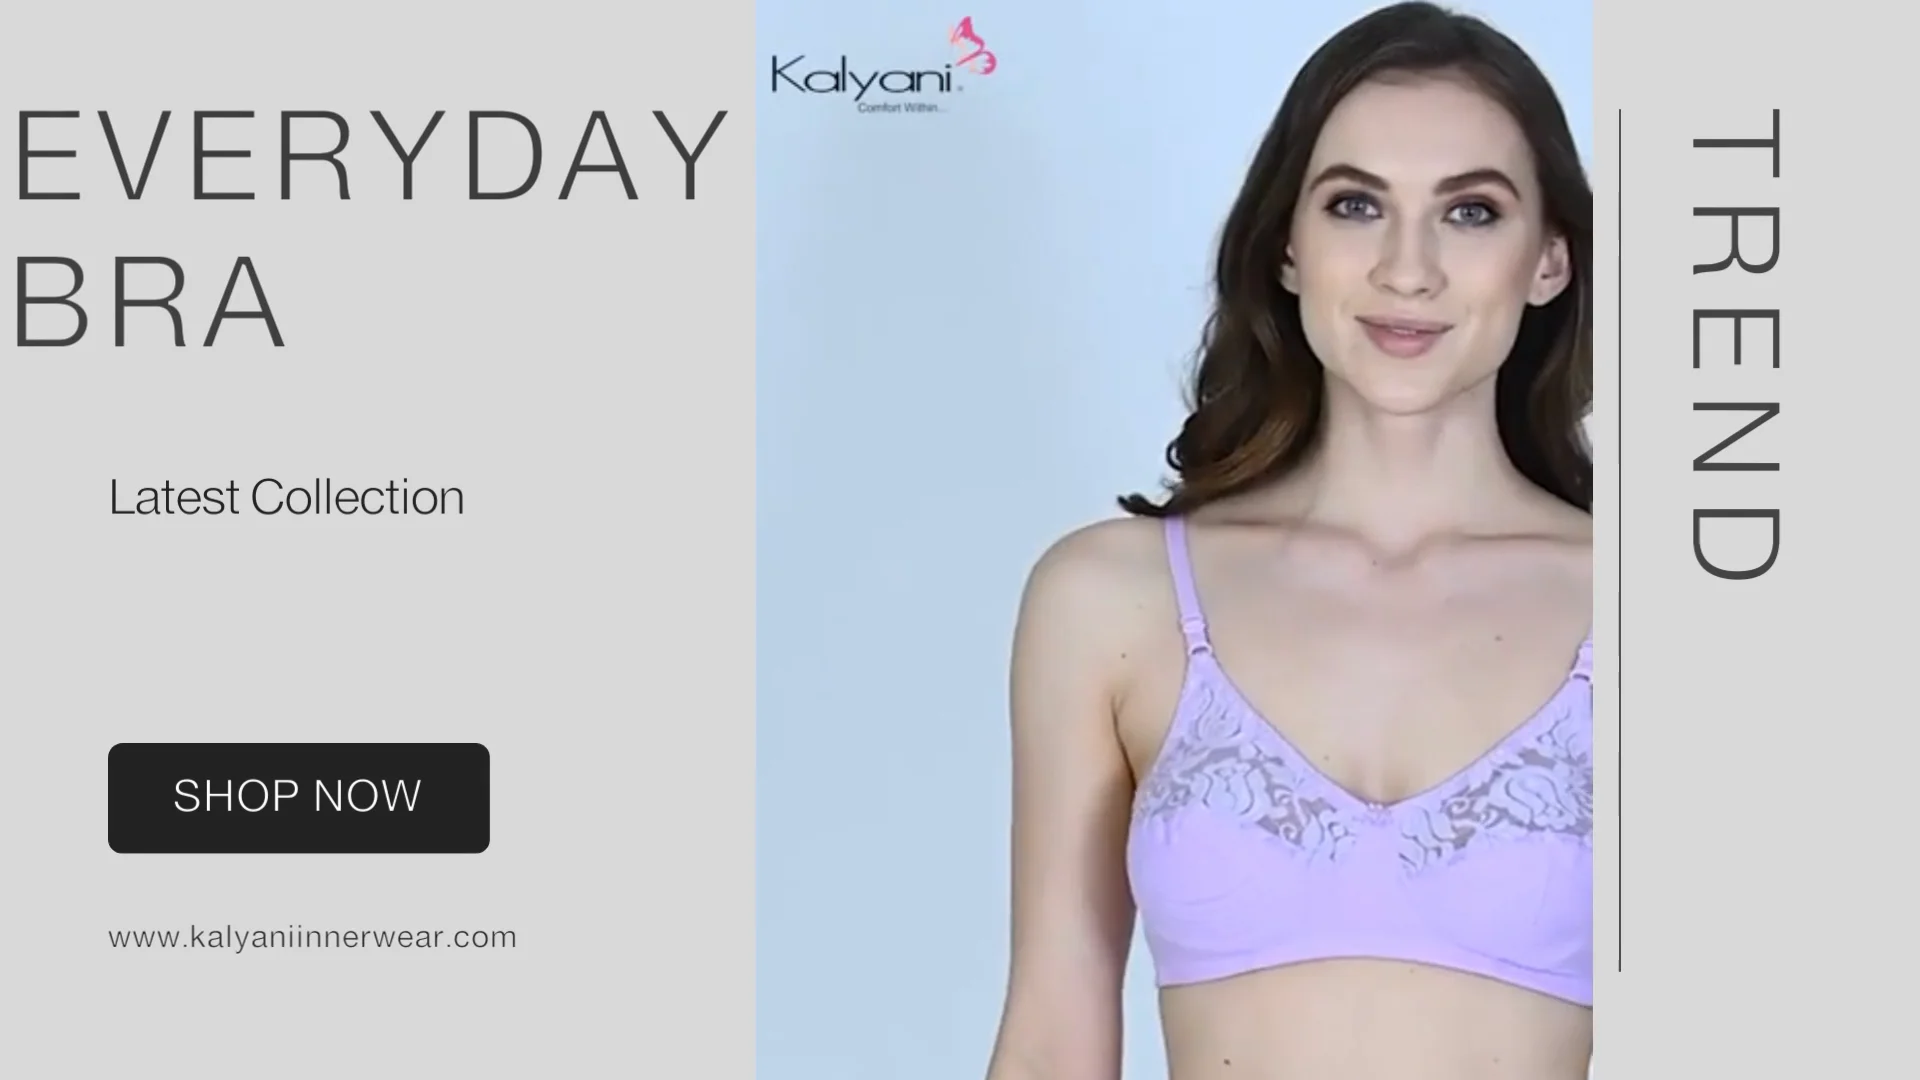 Bras for Daily Wear at Best Price - Kalyani Innerwear on Vimeo